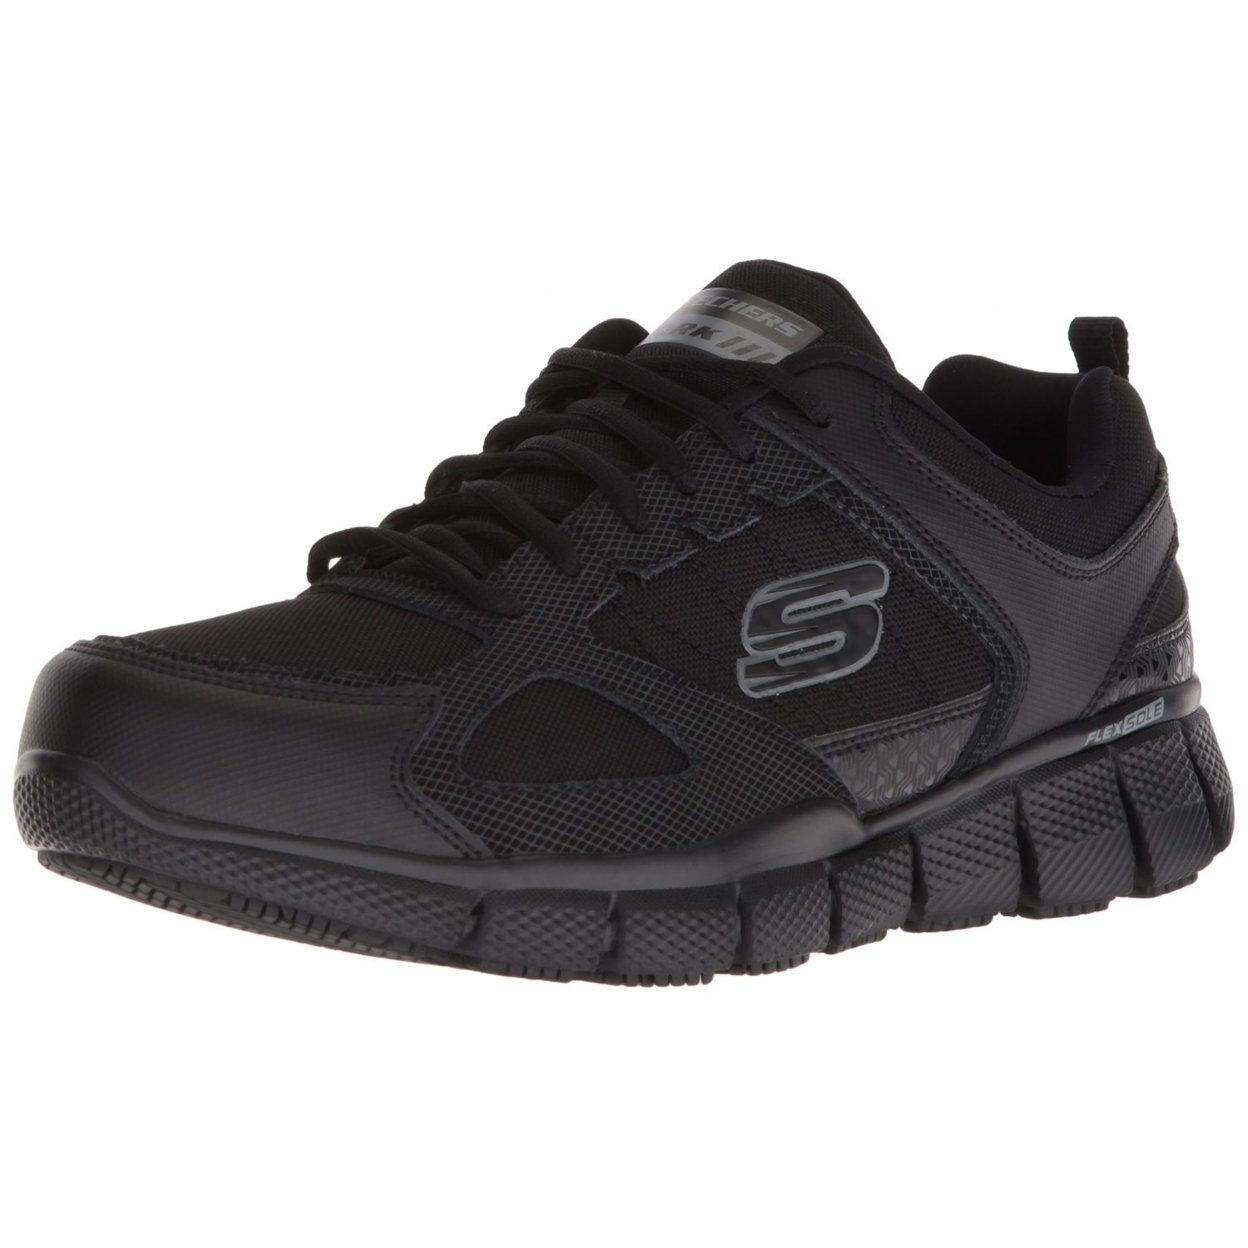 Skechers Men's Telfin-sanphet Industrial Shoe BLACK - BLACK, 12 Wide